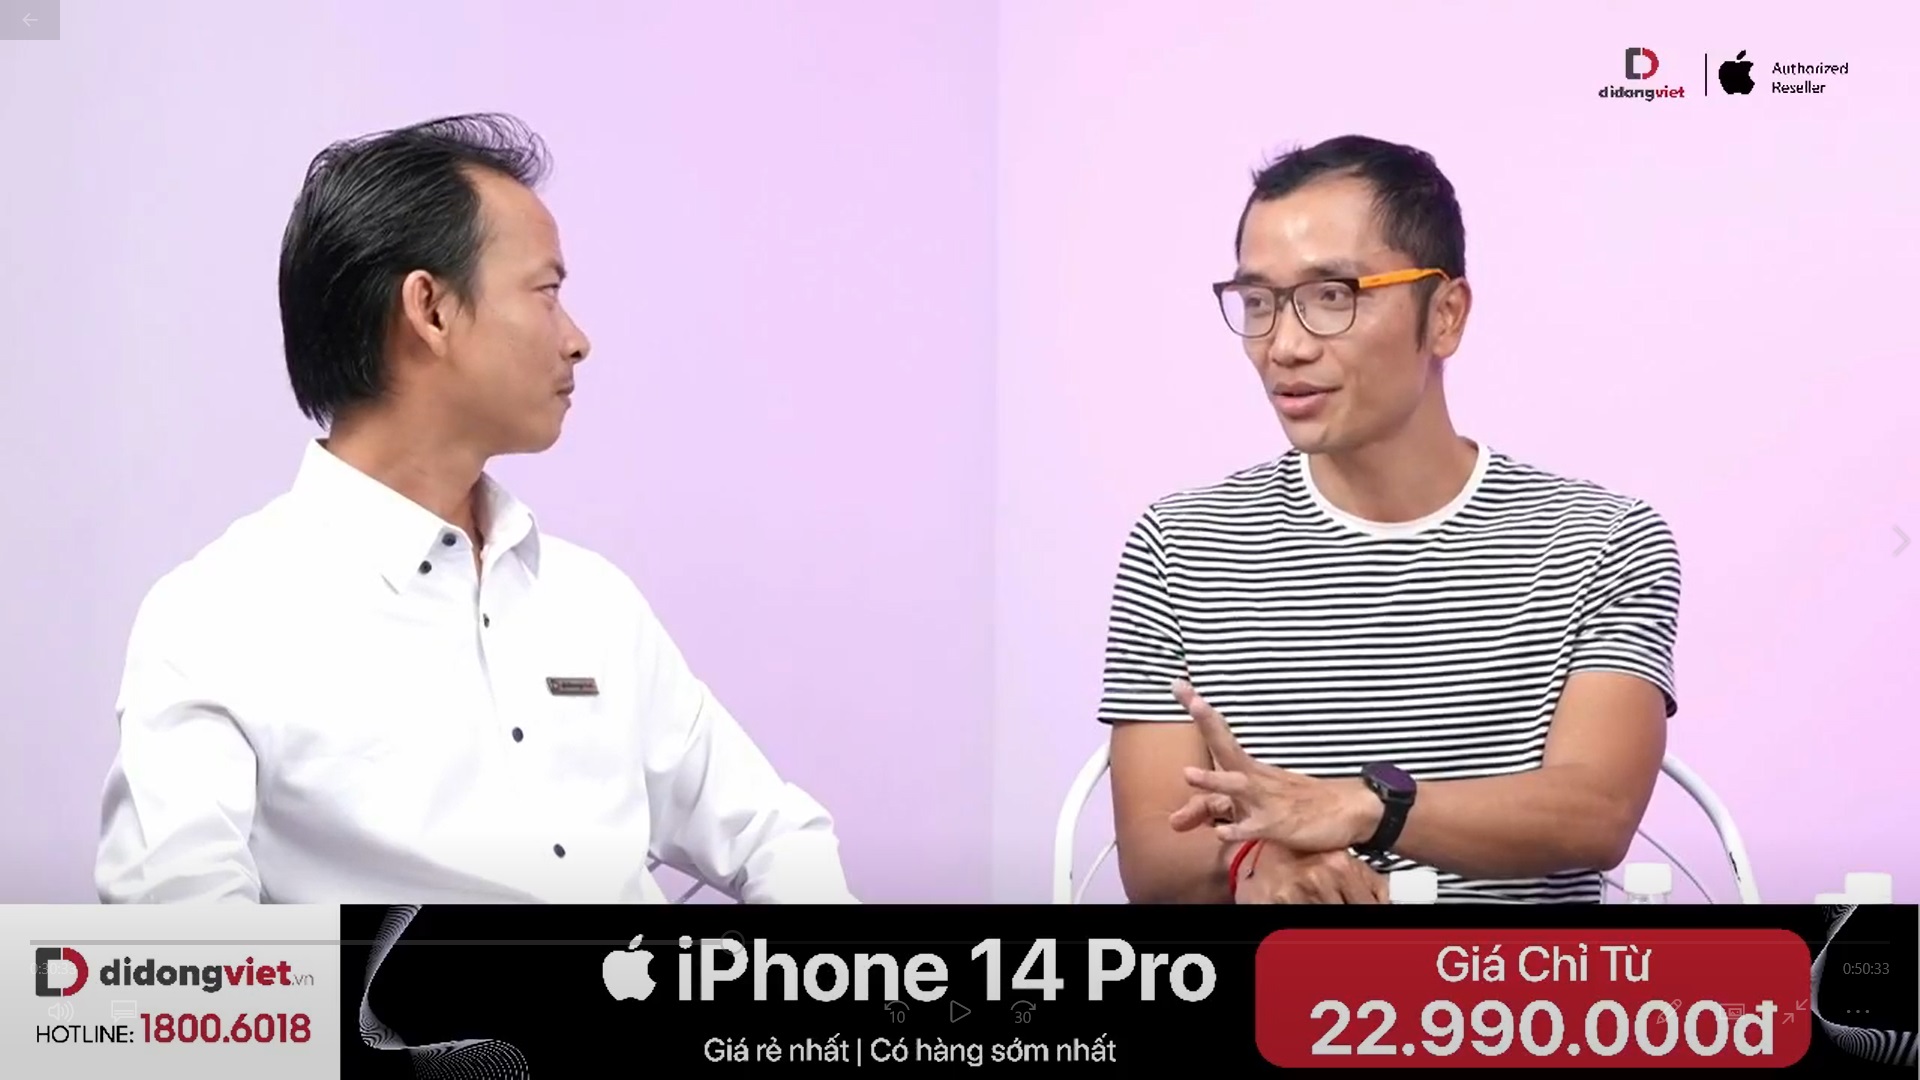 Media Việt Nam lần đầu tham gia sự kiện Apple quốc tế và những câu chuyện bây giờ mới kể